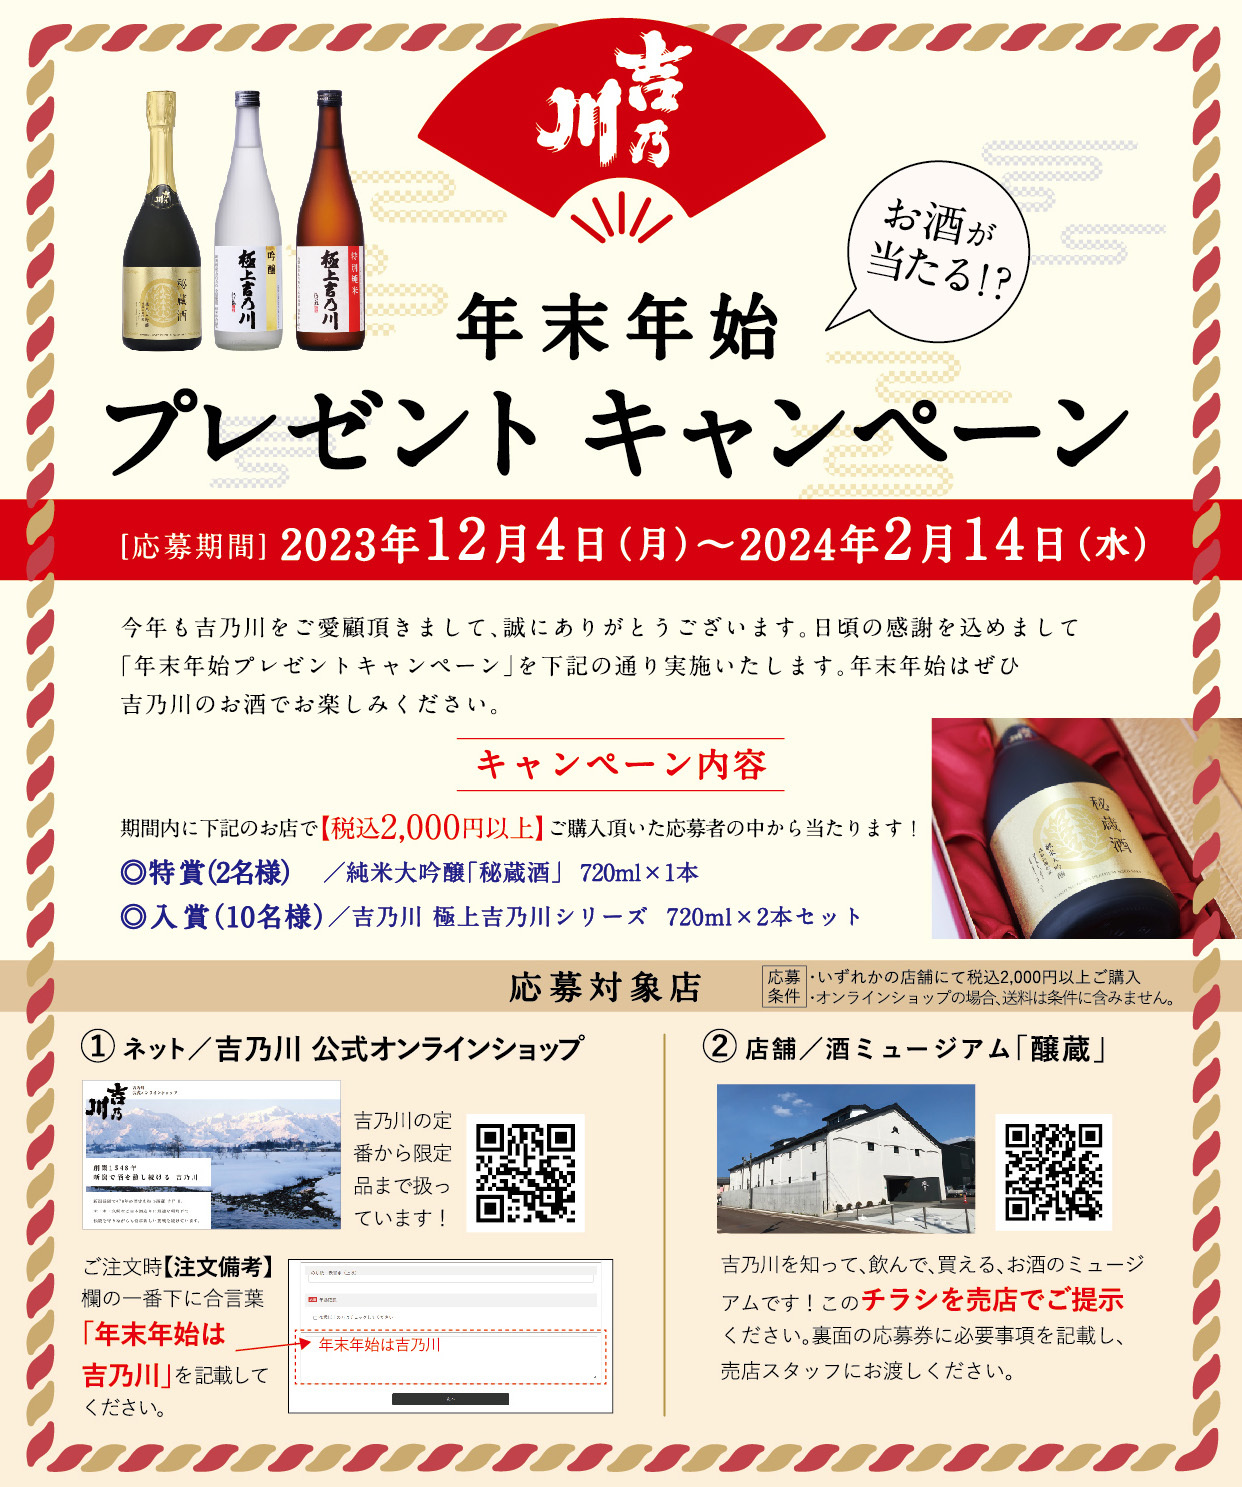 新潟の老舗蔵元「吉乃川」が、12月4日に
“年末年始プレゼントキャンペーン”を開始